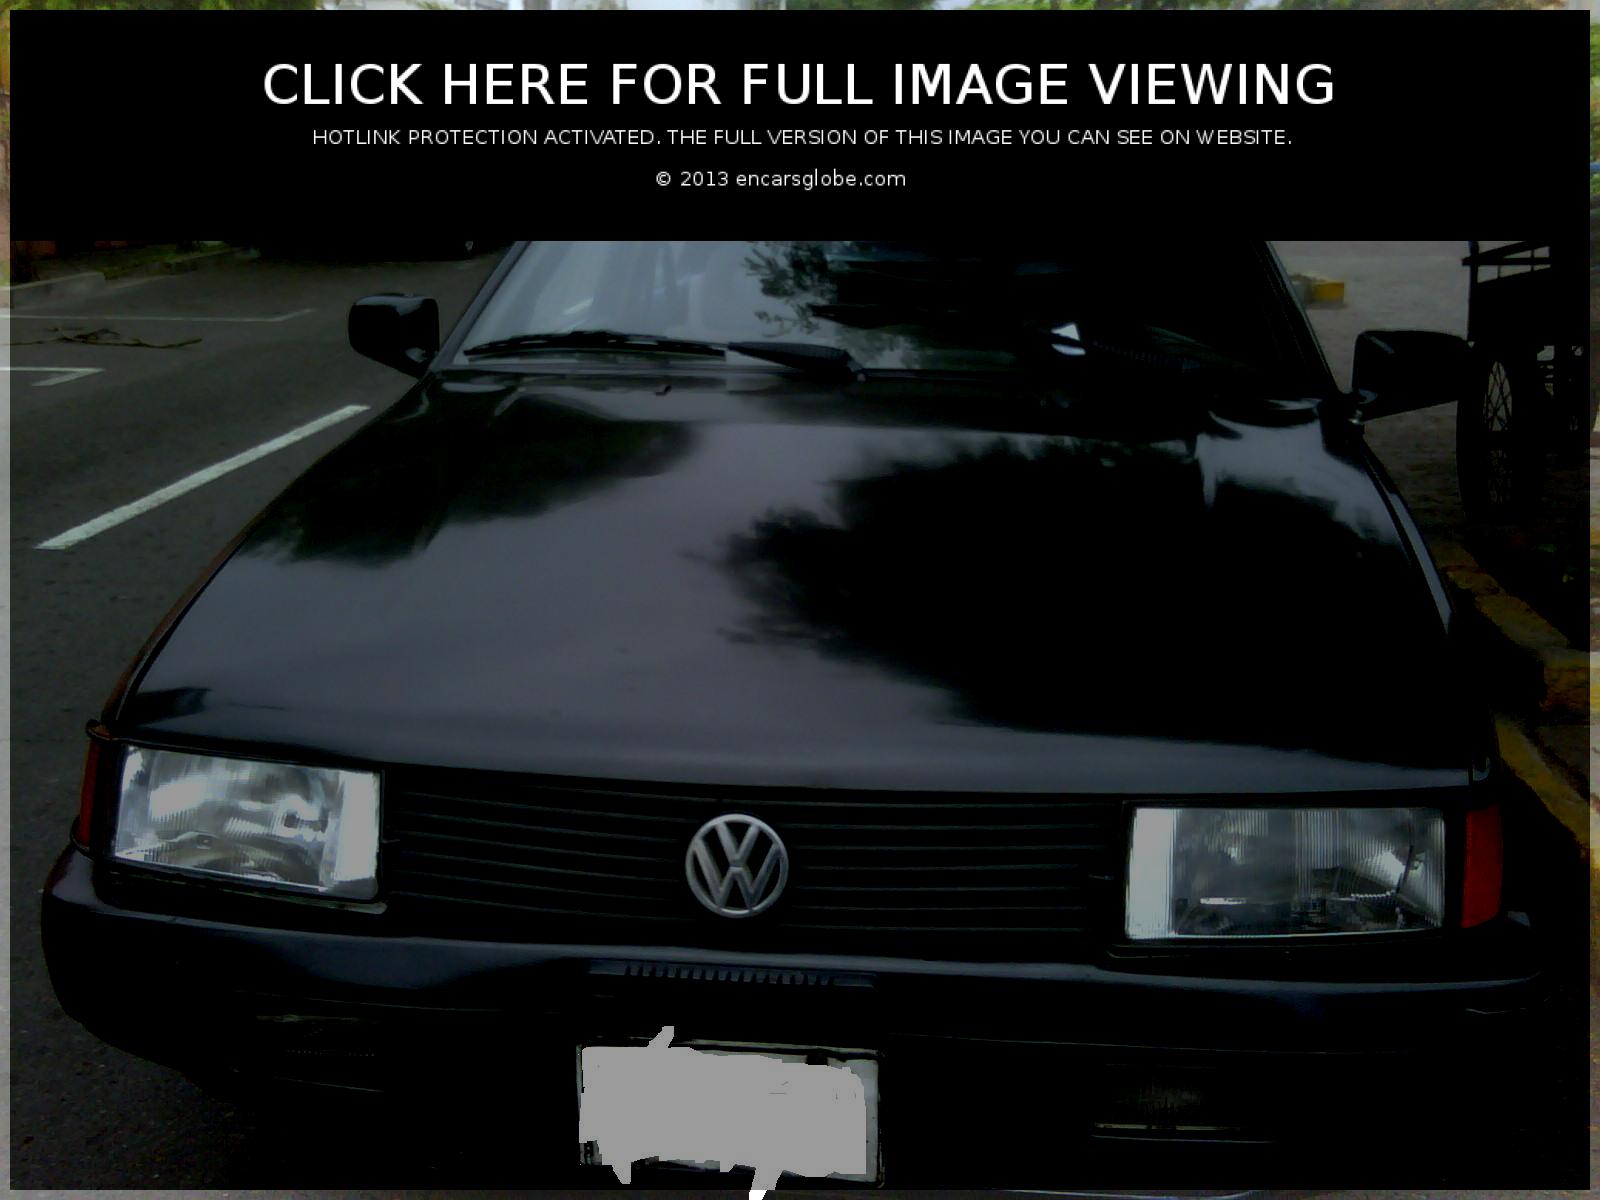 Volkswagen Santana 18 Mi: Photo gallery, complete information ...